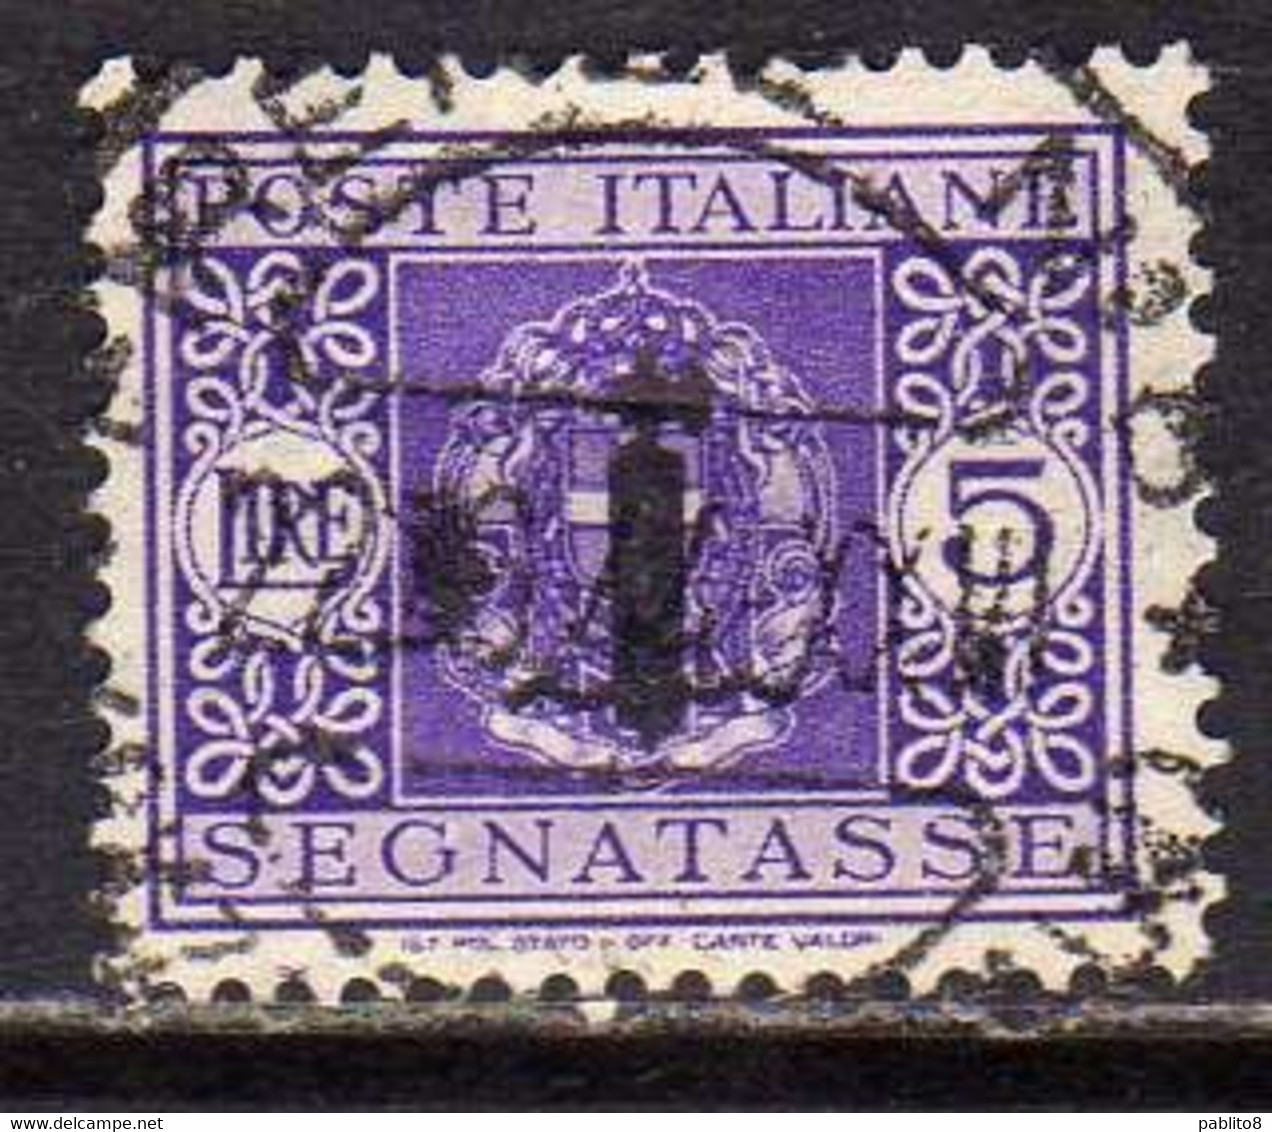 ITALIA REGNO ITALY KINGDOM 1944 REPUBBLICA SOCIALE ITALIANA RSI TASSE POSTAGE DUE TAXES SEGNATASSE FASCIO LIRE 5 USATO - Taxe